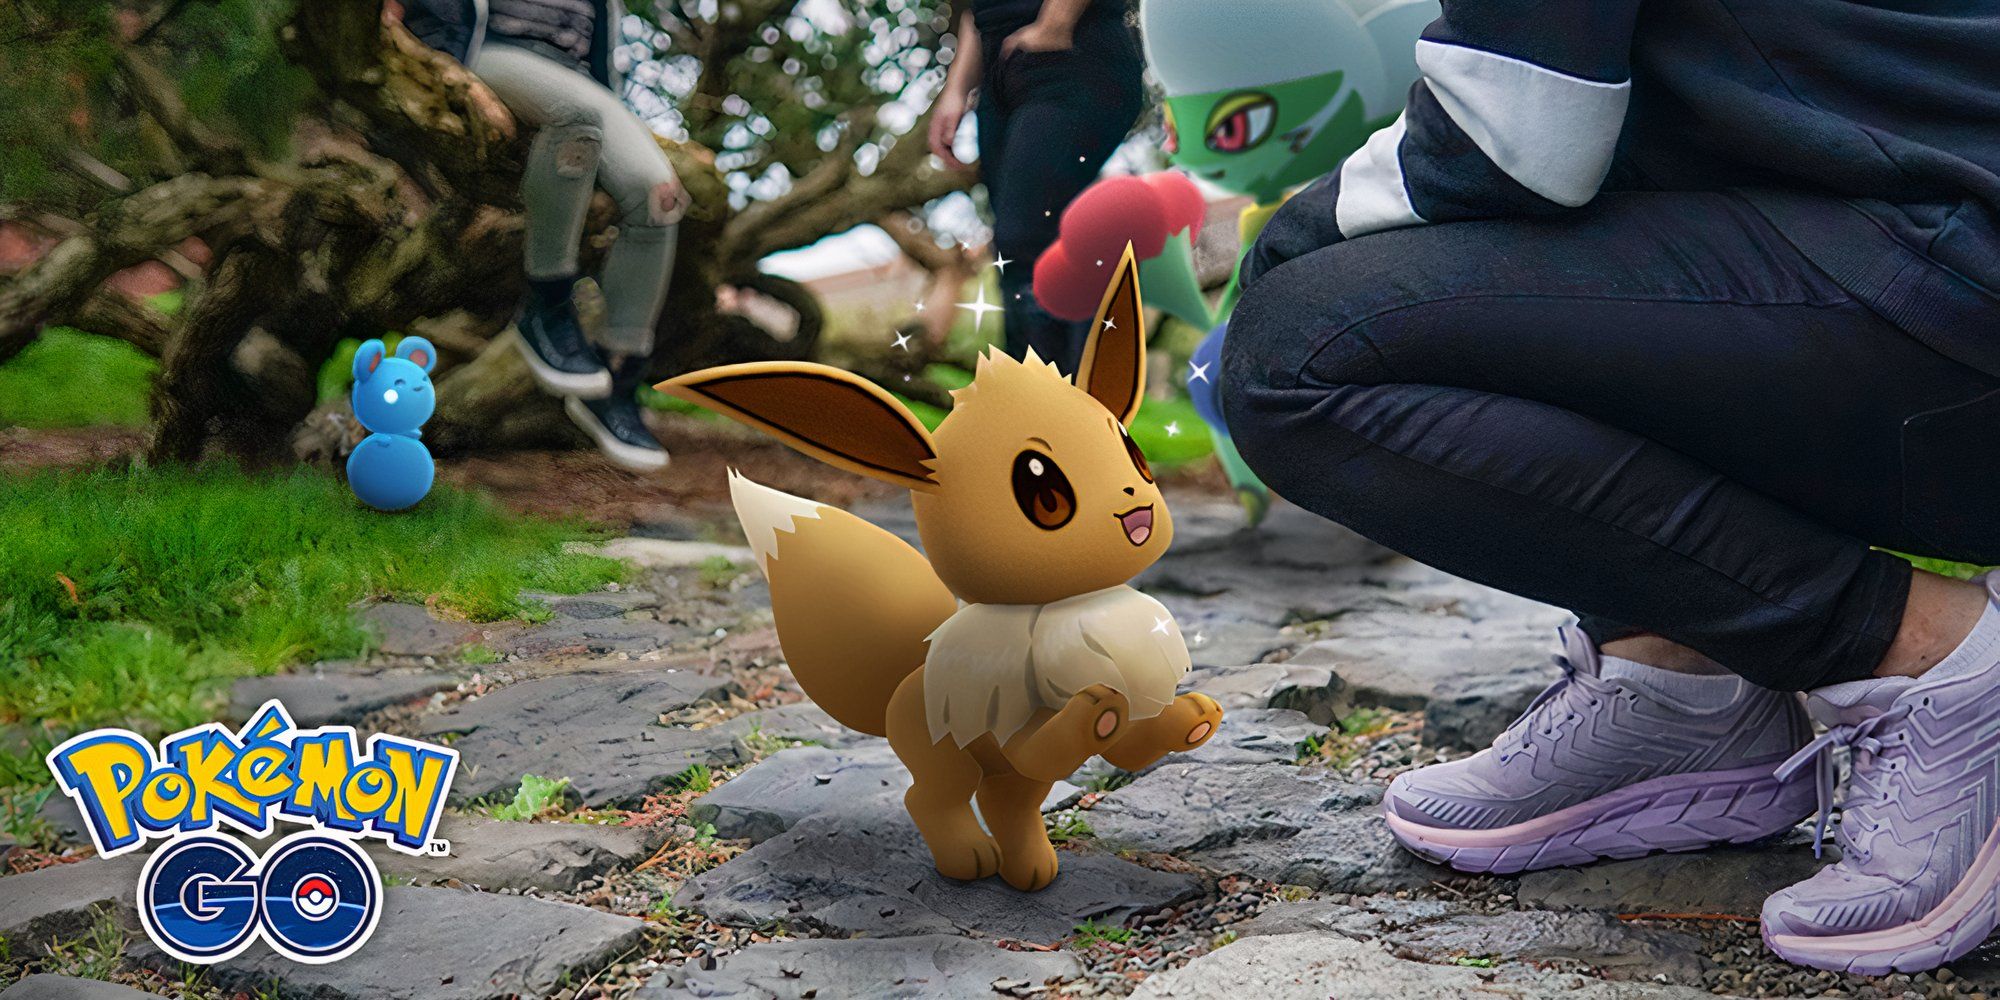 Eevee aparecendo como um Buddy ao lado de seu treinador em Pokémon GO